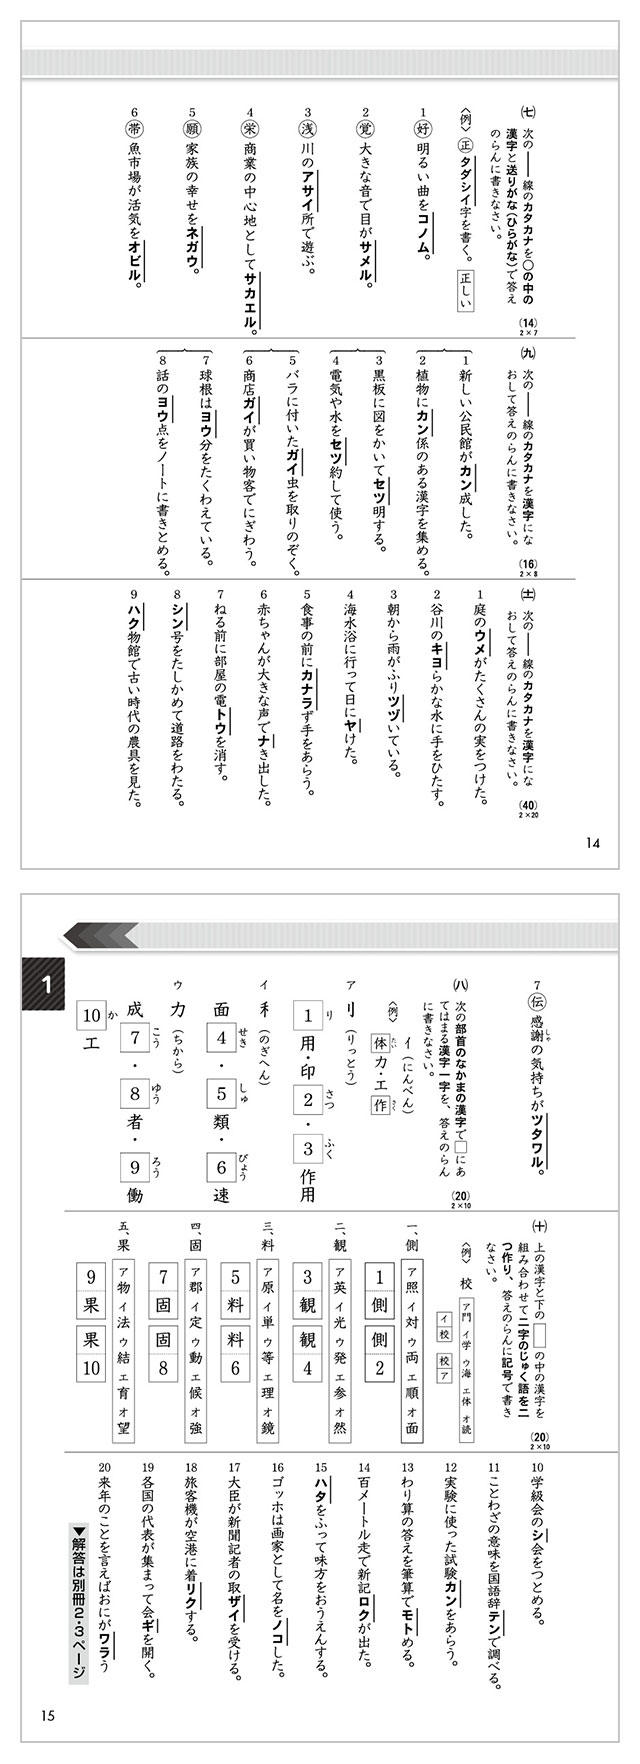 無料印刷可能 10 級 漢字検定 過去問 ガサタメガ